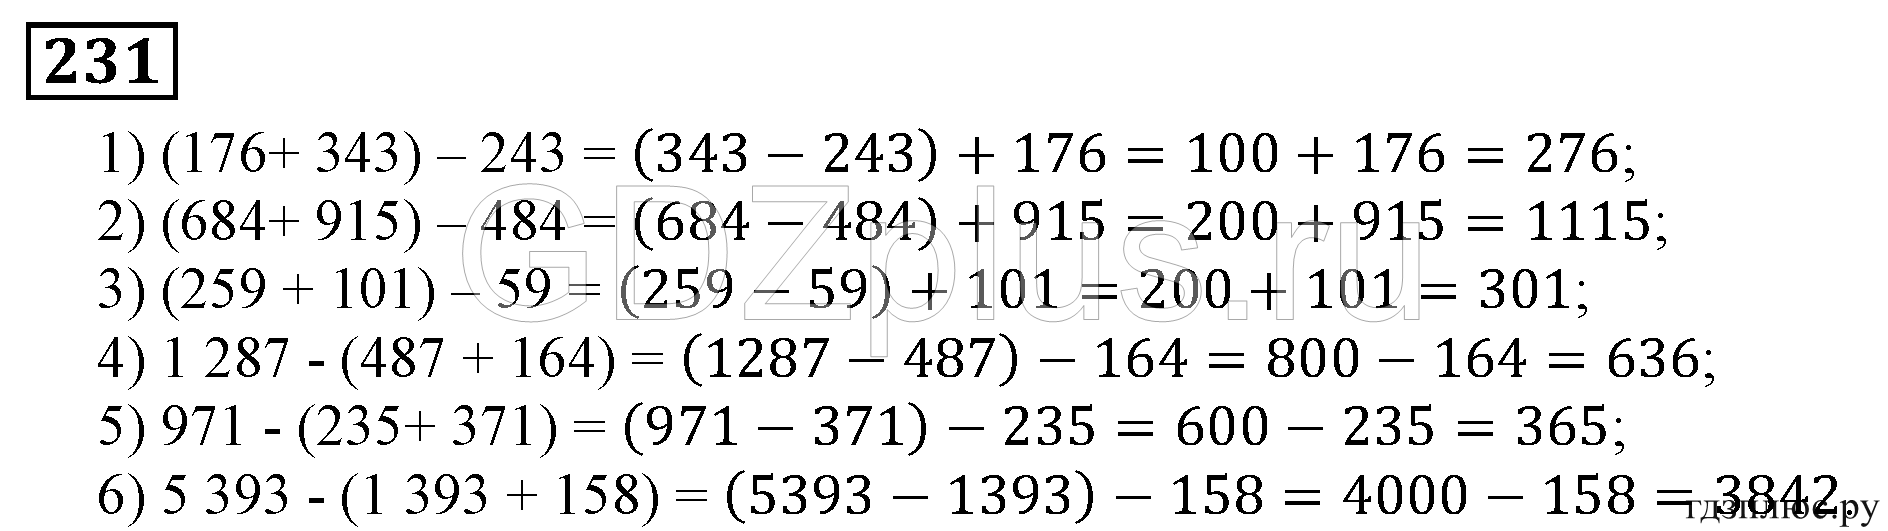 Математика 5 класс 1 часть стр 231